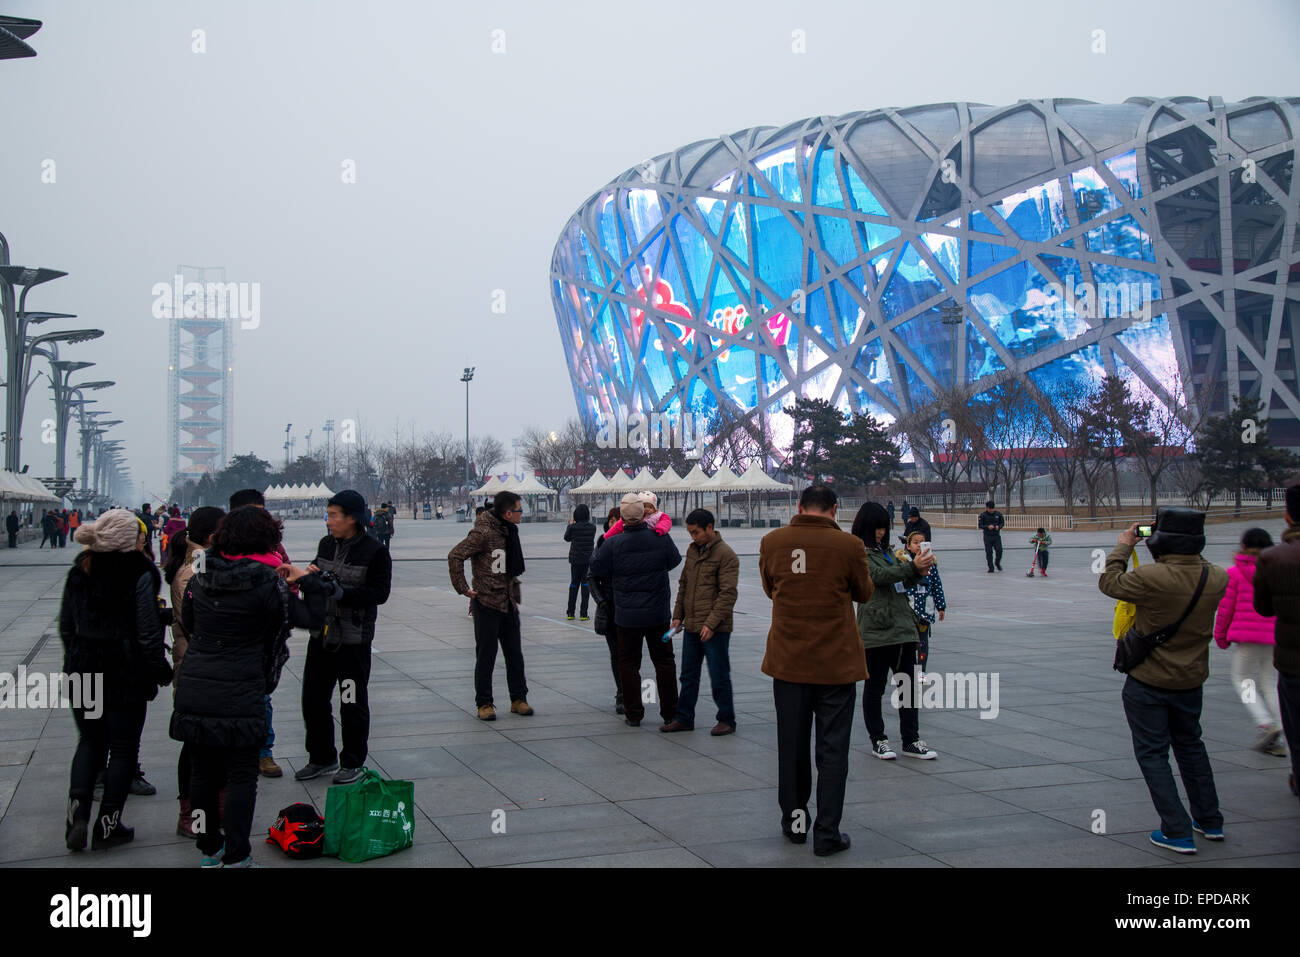 Le célèbre parc olympique à birdnest à Beijing Chine Banque D'Images